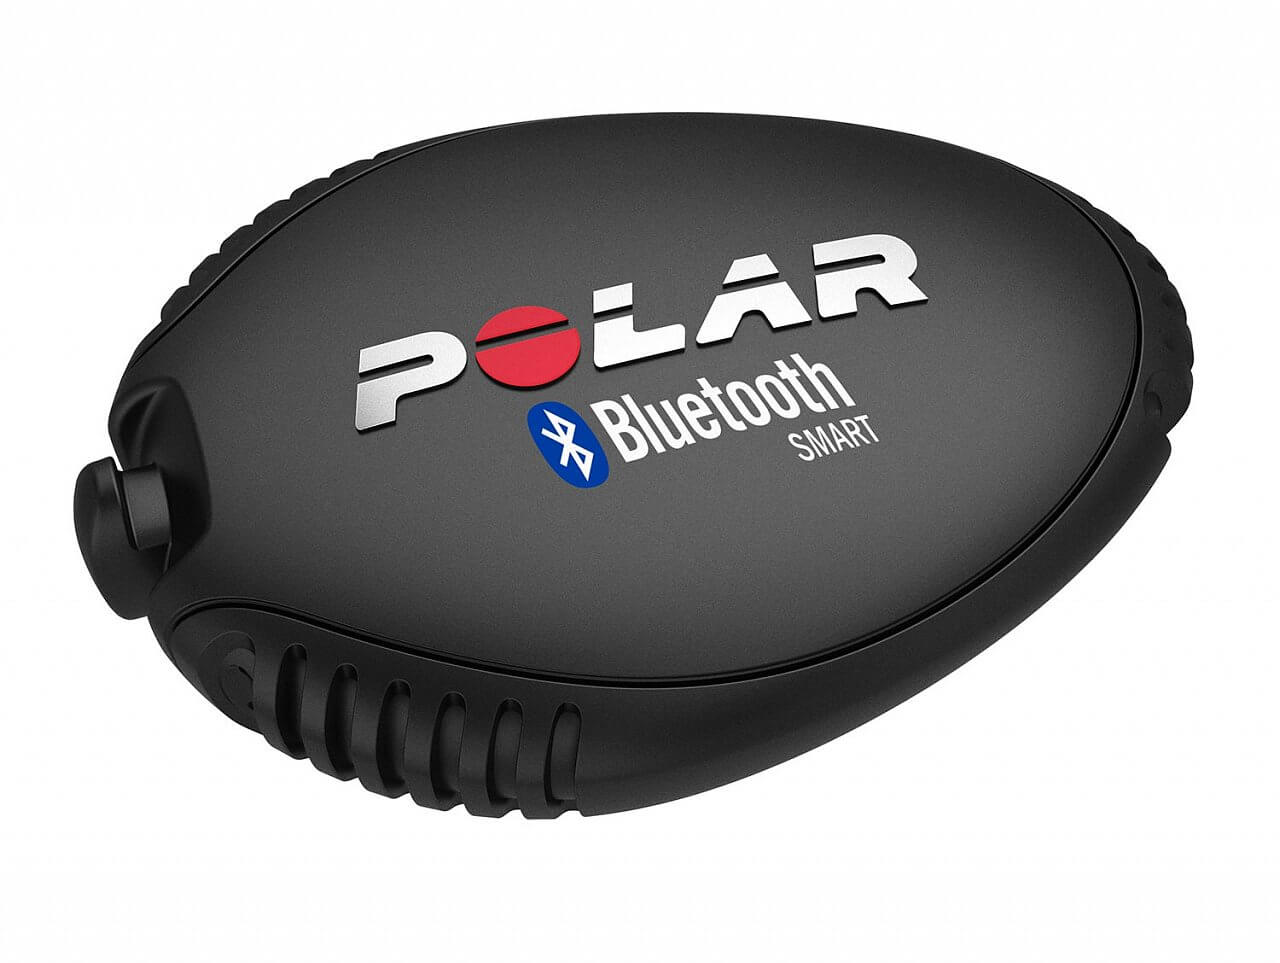 Nožní snímač Polar Bluetooth Smart nožní snímač